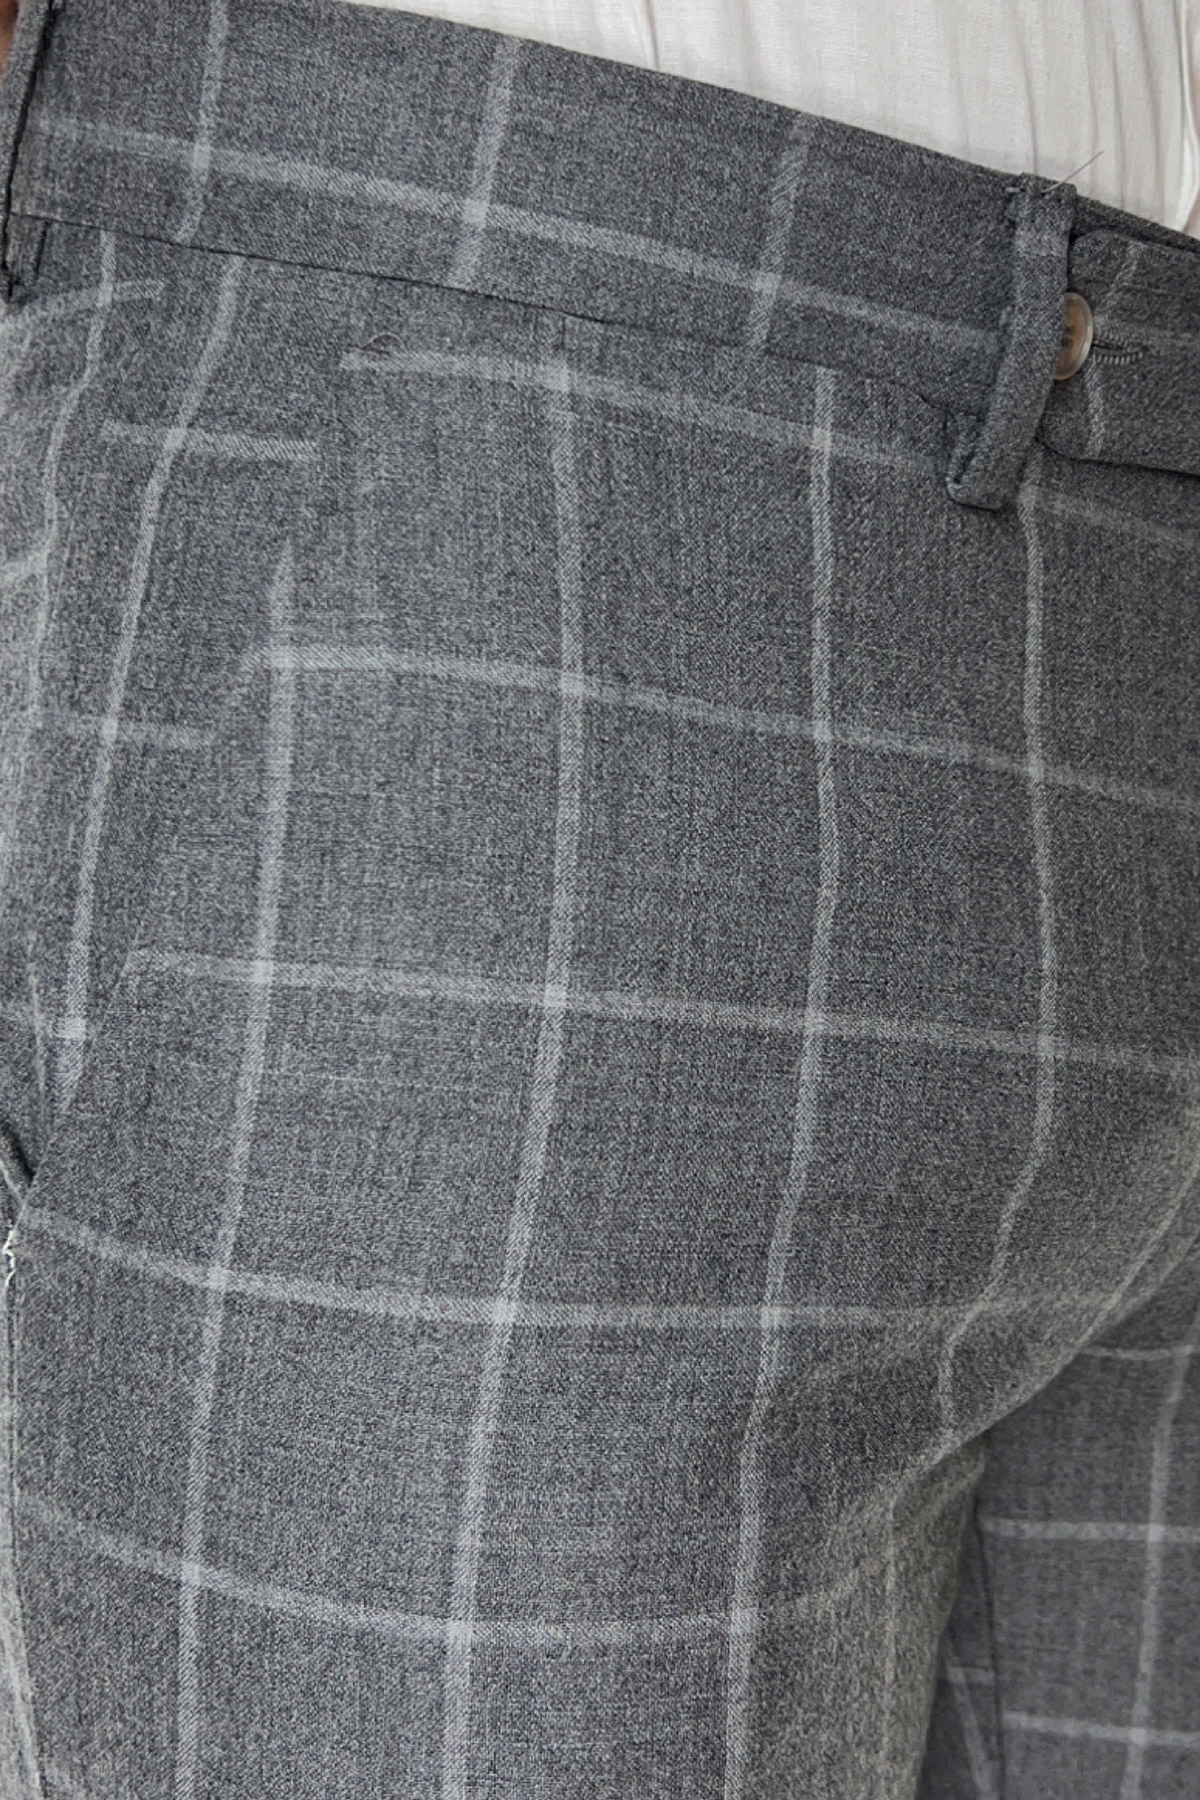 Pantalone uomo grigio a quadri in lana 100% tasca america orlo a mano